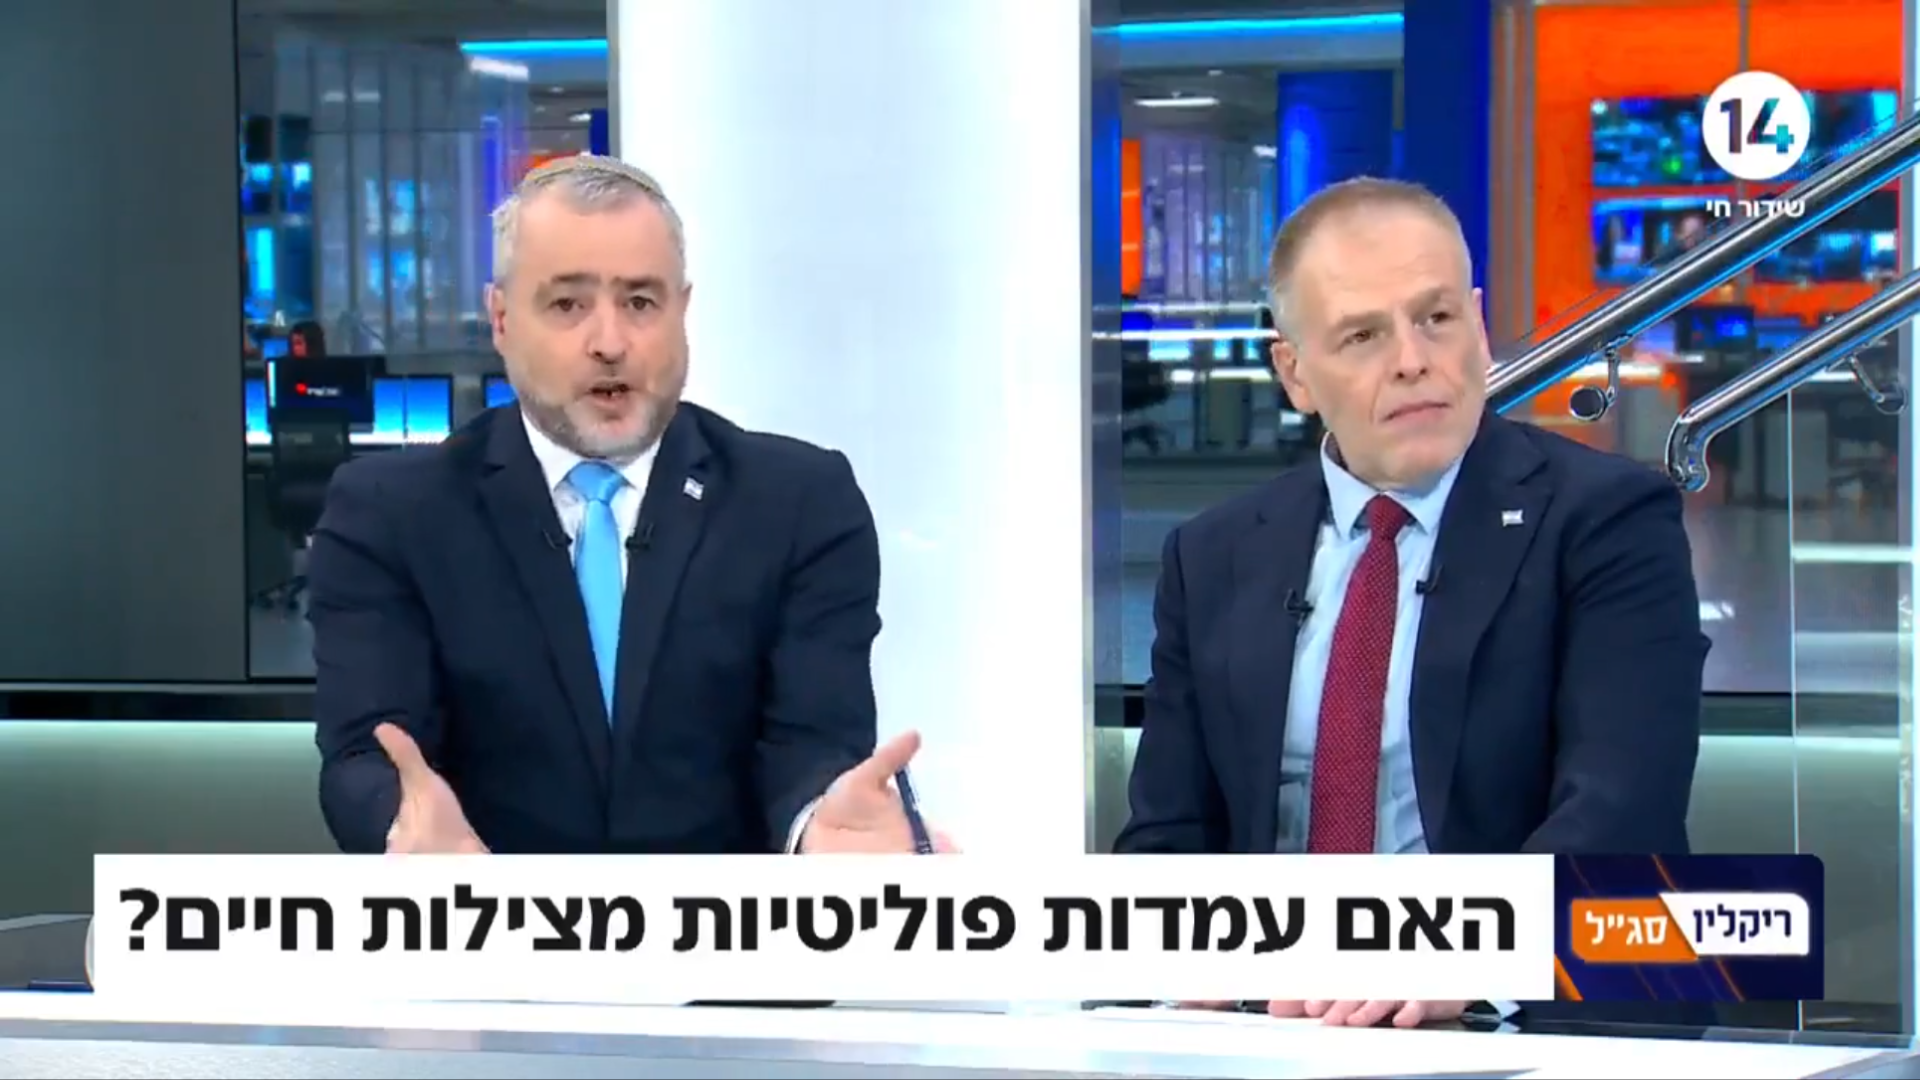 הראל סג"ל ושמעון ריקלין | צילום: ערוץ 14